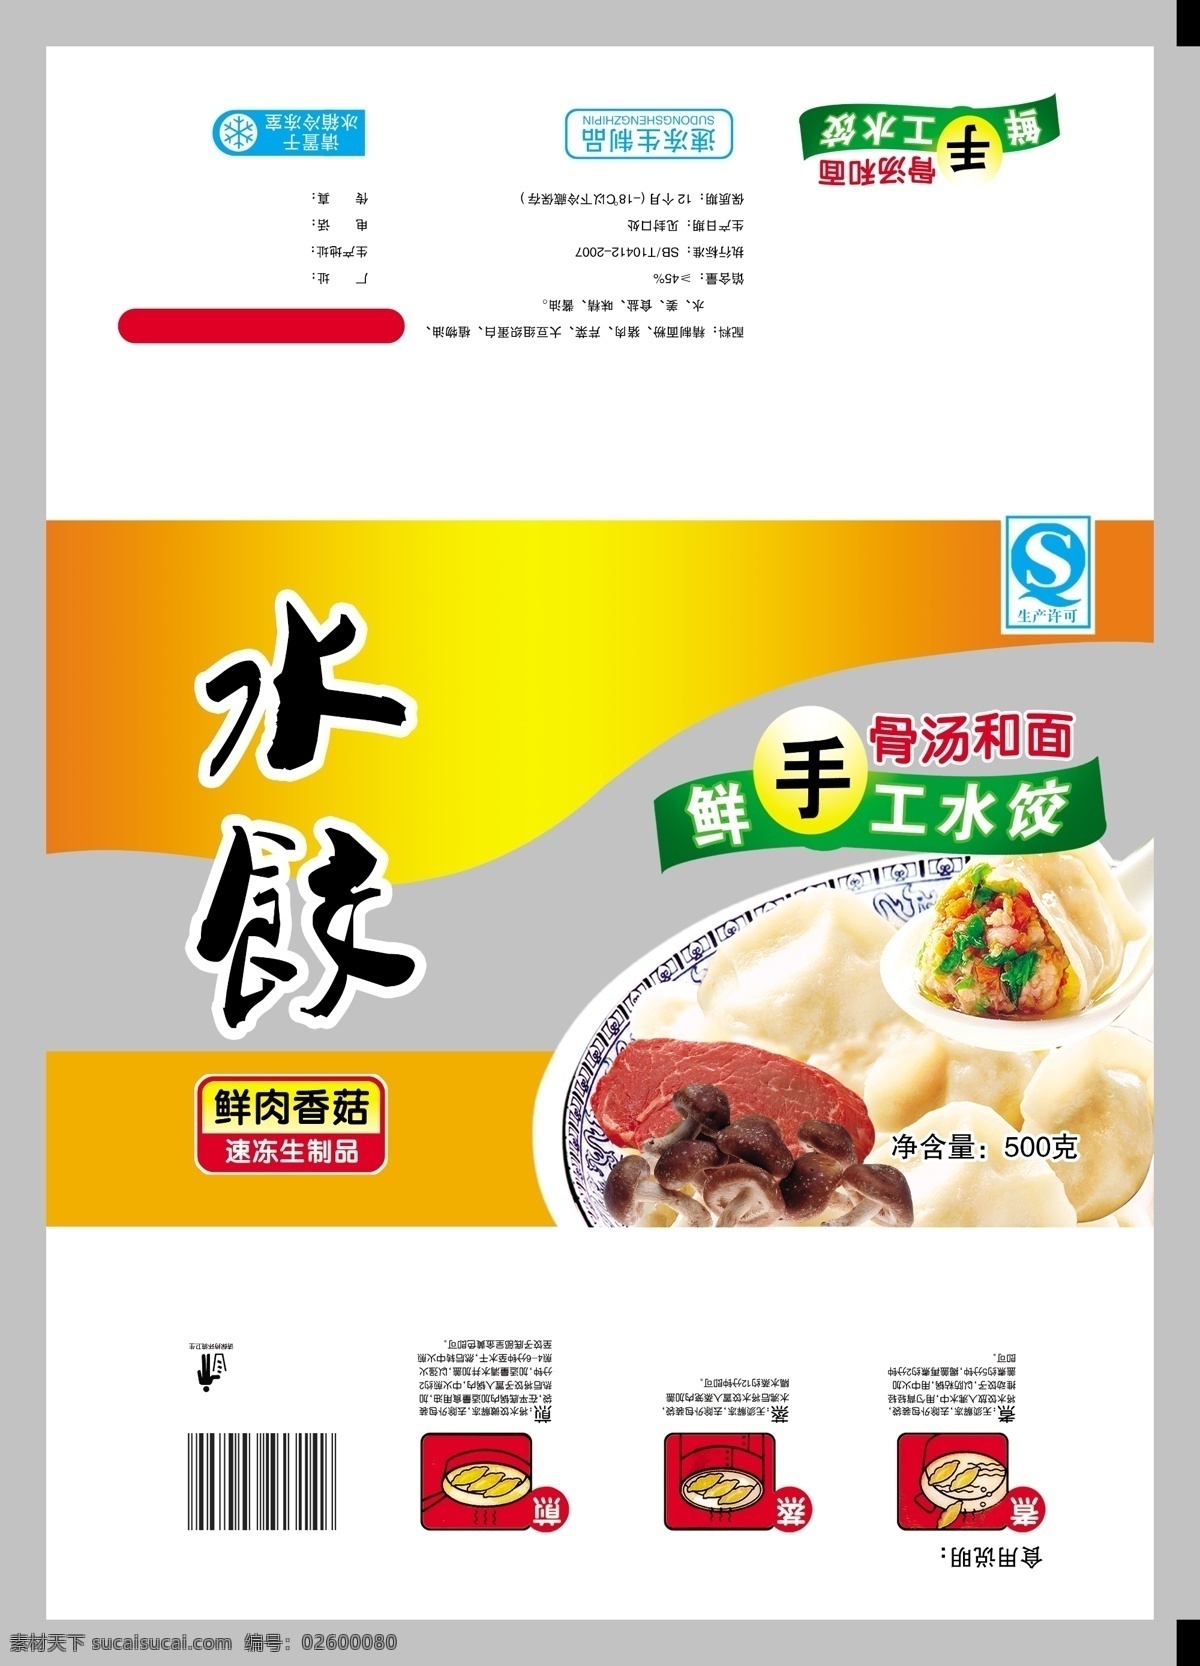 水饺展开图 水饺包装 饺子包装 汤圆包装 元宵包装 馄饨包装 速冻食品 包装设计